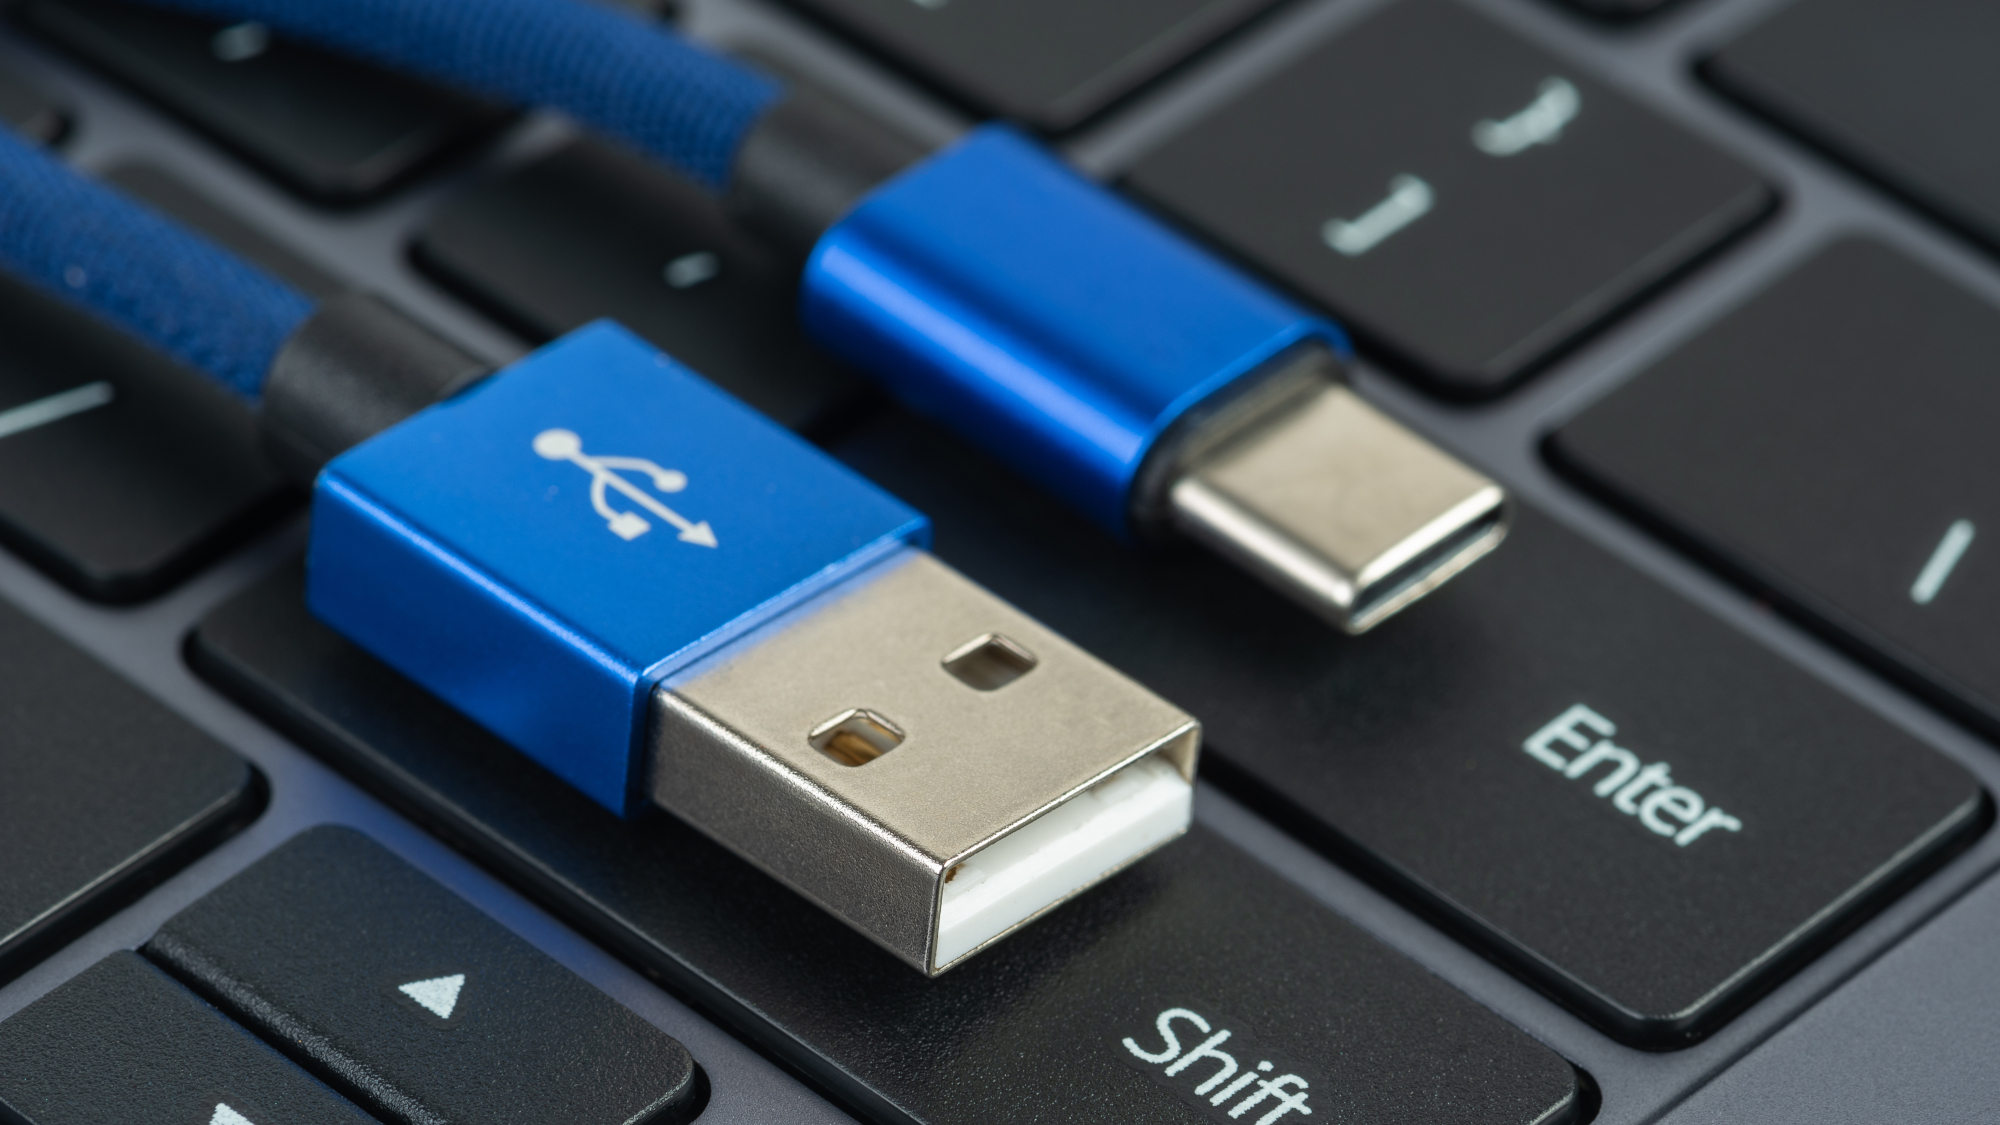 USB C vs A vs B: Which One Do You Need for Your Product?